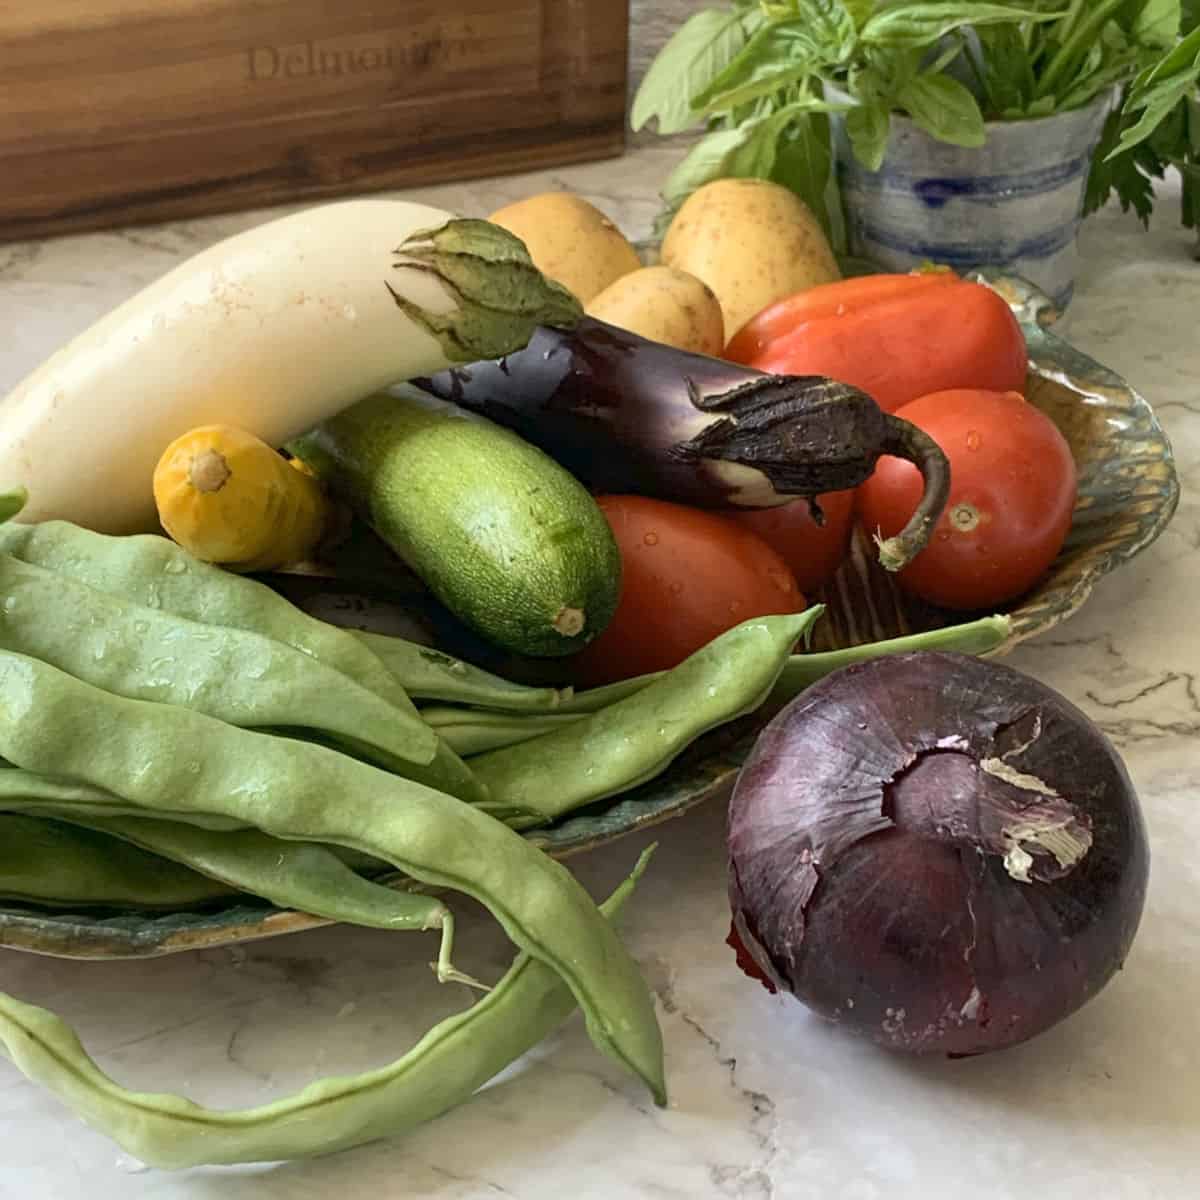 Eggplants, zucchini, onion, eggplants, beans, and tomatoes.